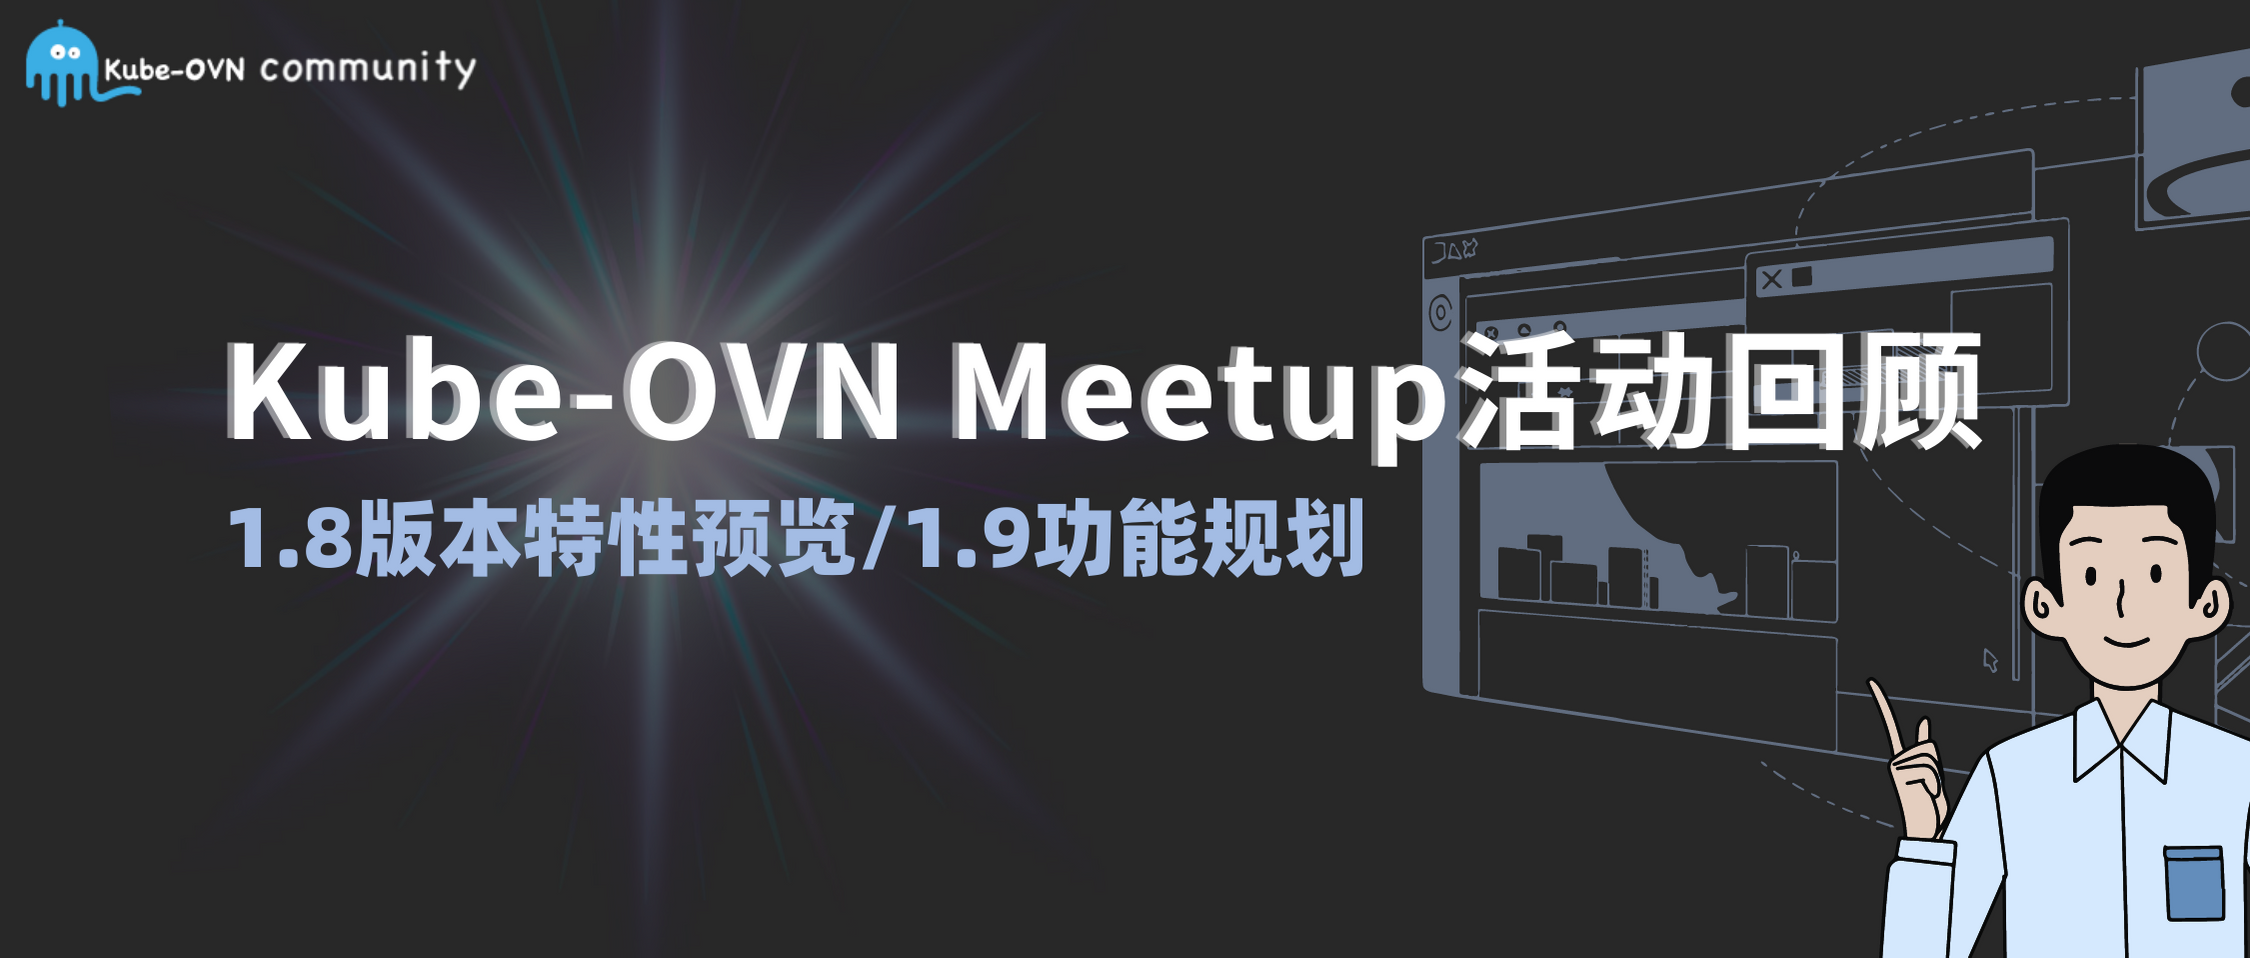 活动回顾Kube-OVN 社区线上 Meetup，what's the next